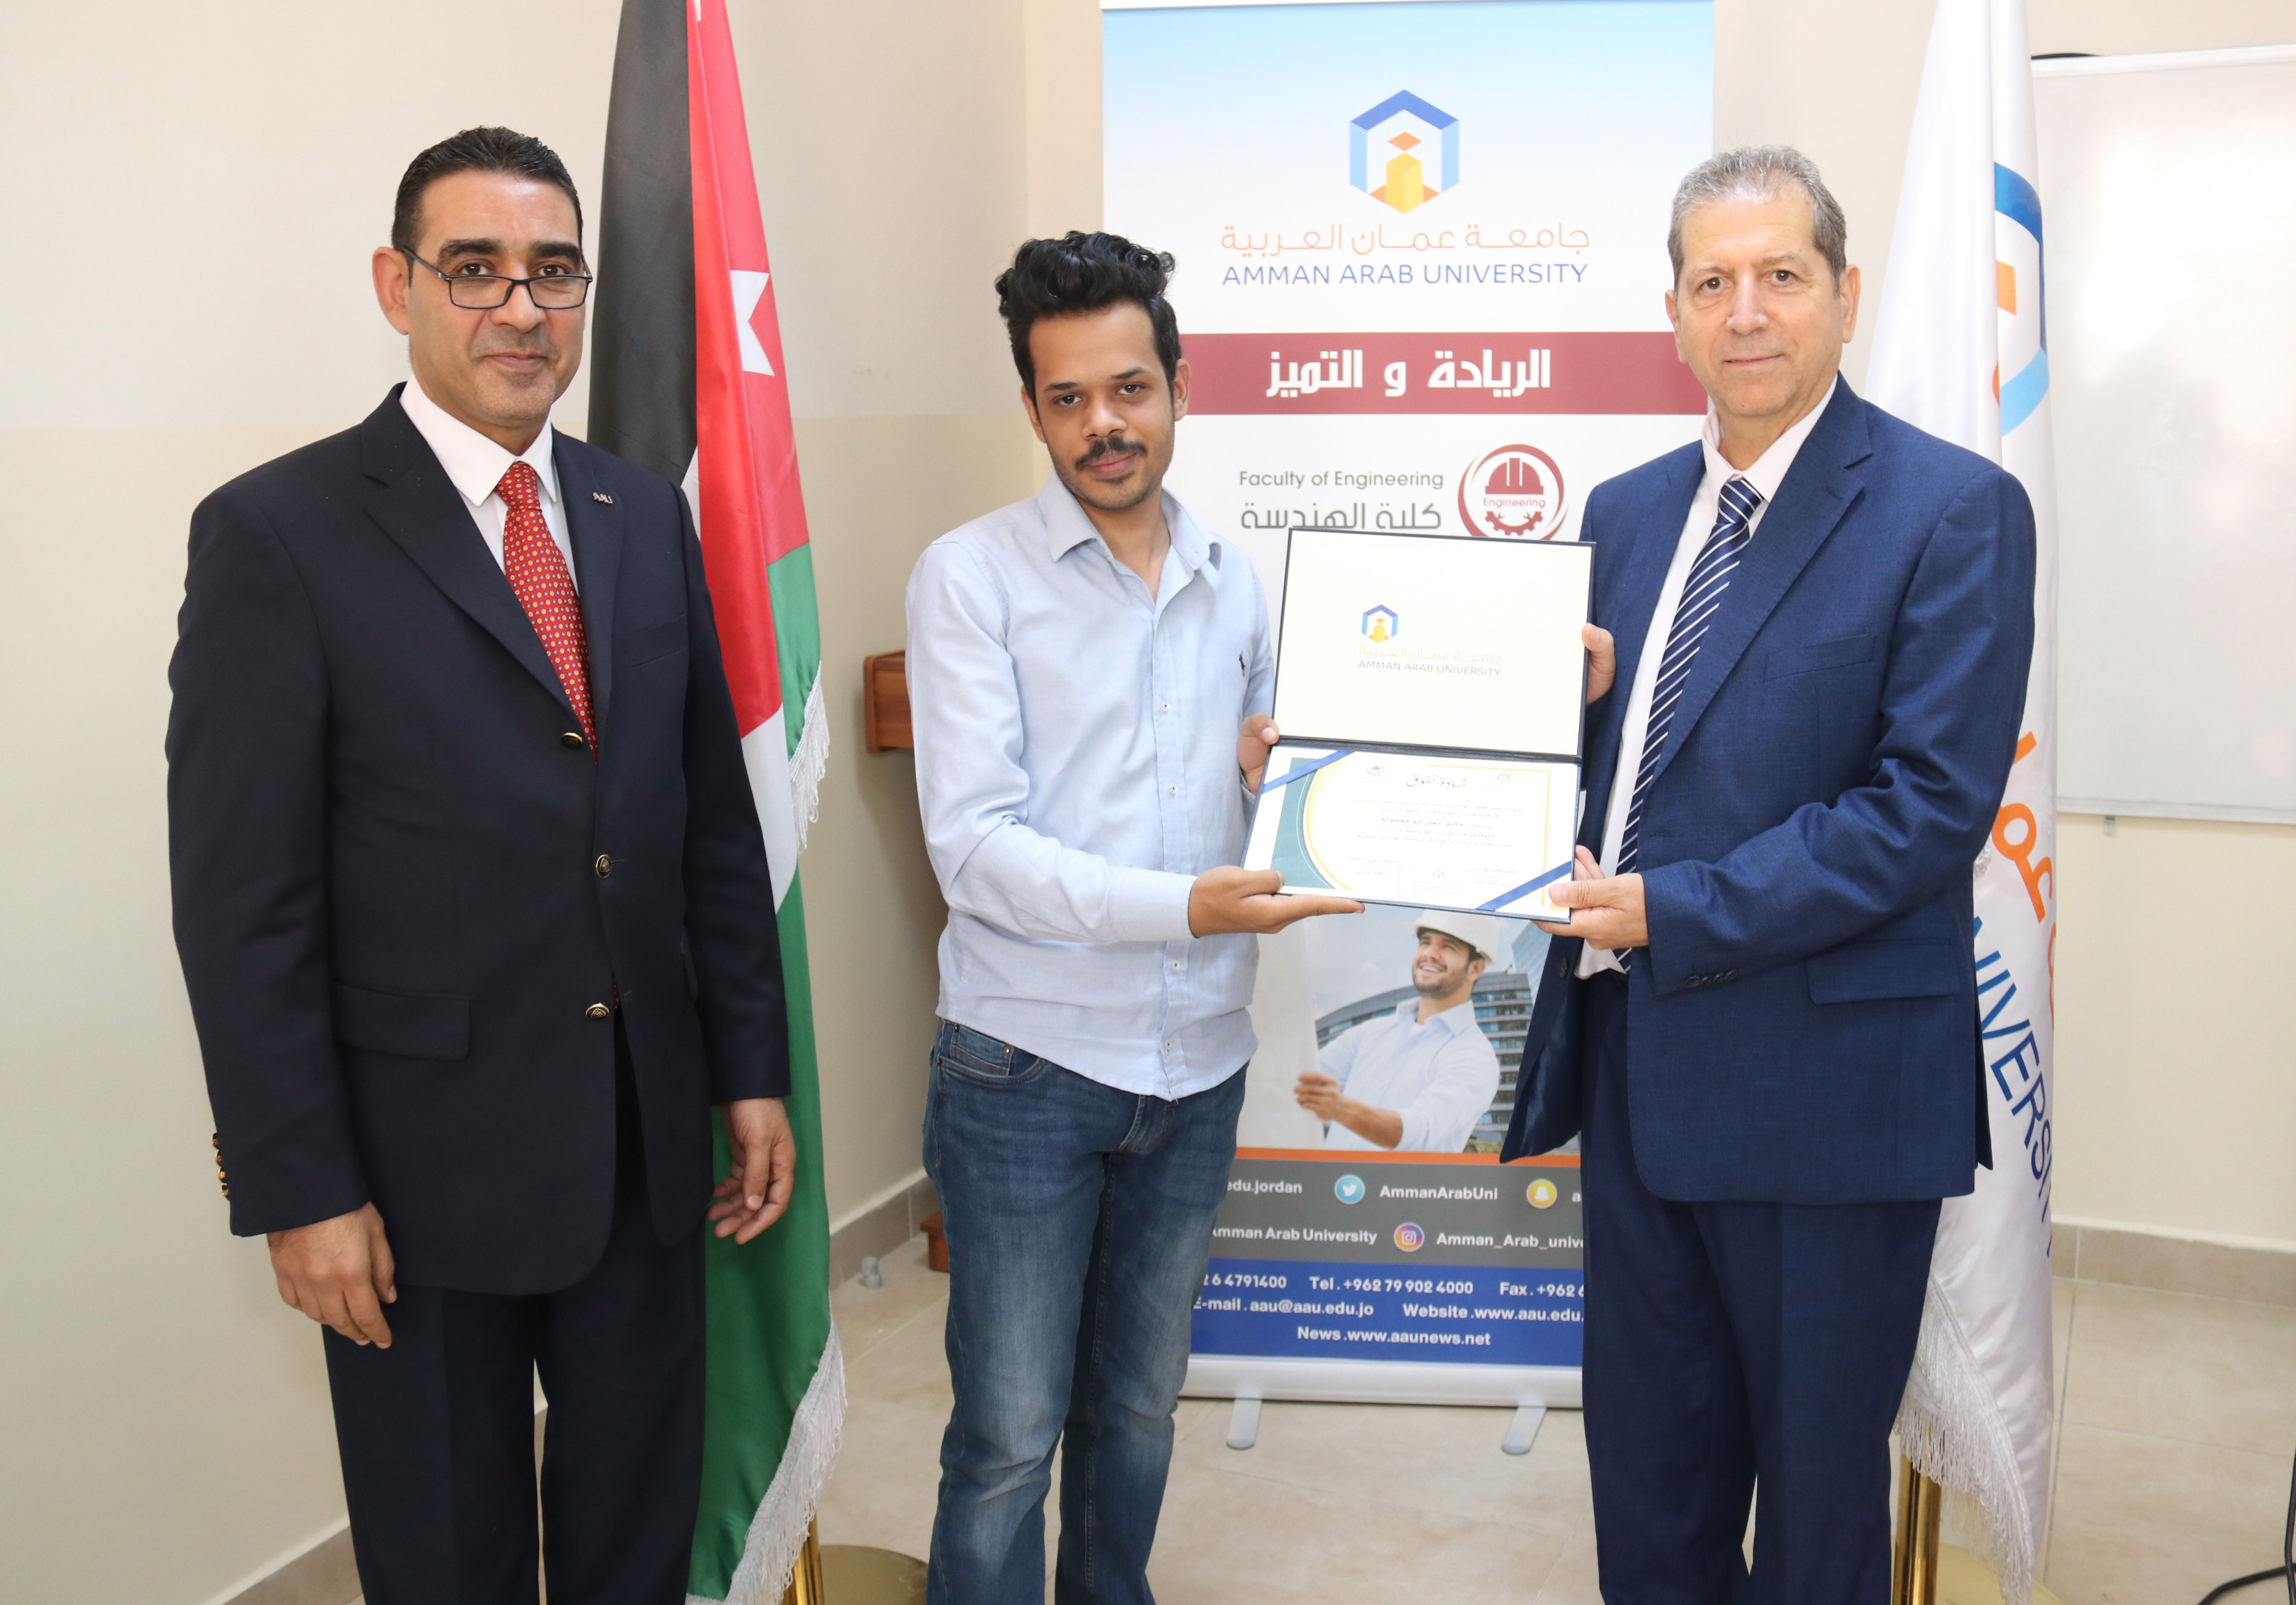 كلية الهندسة في "عمان العربية" تكرم الطلبة الأوائل8